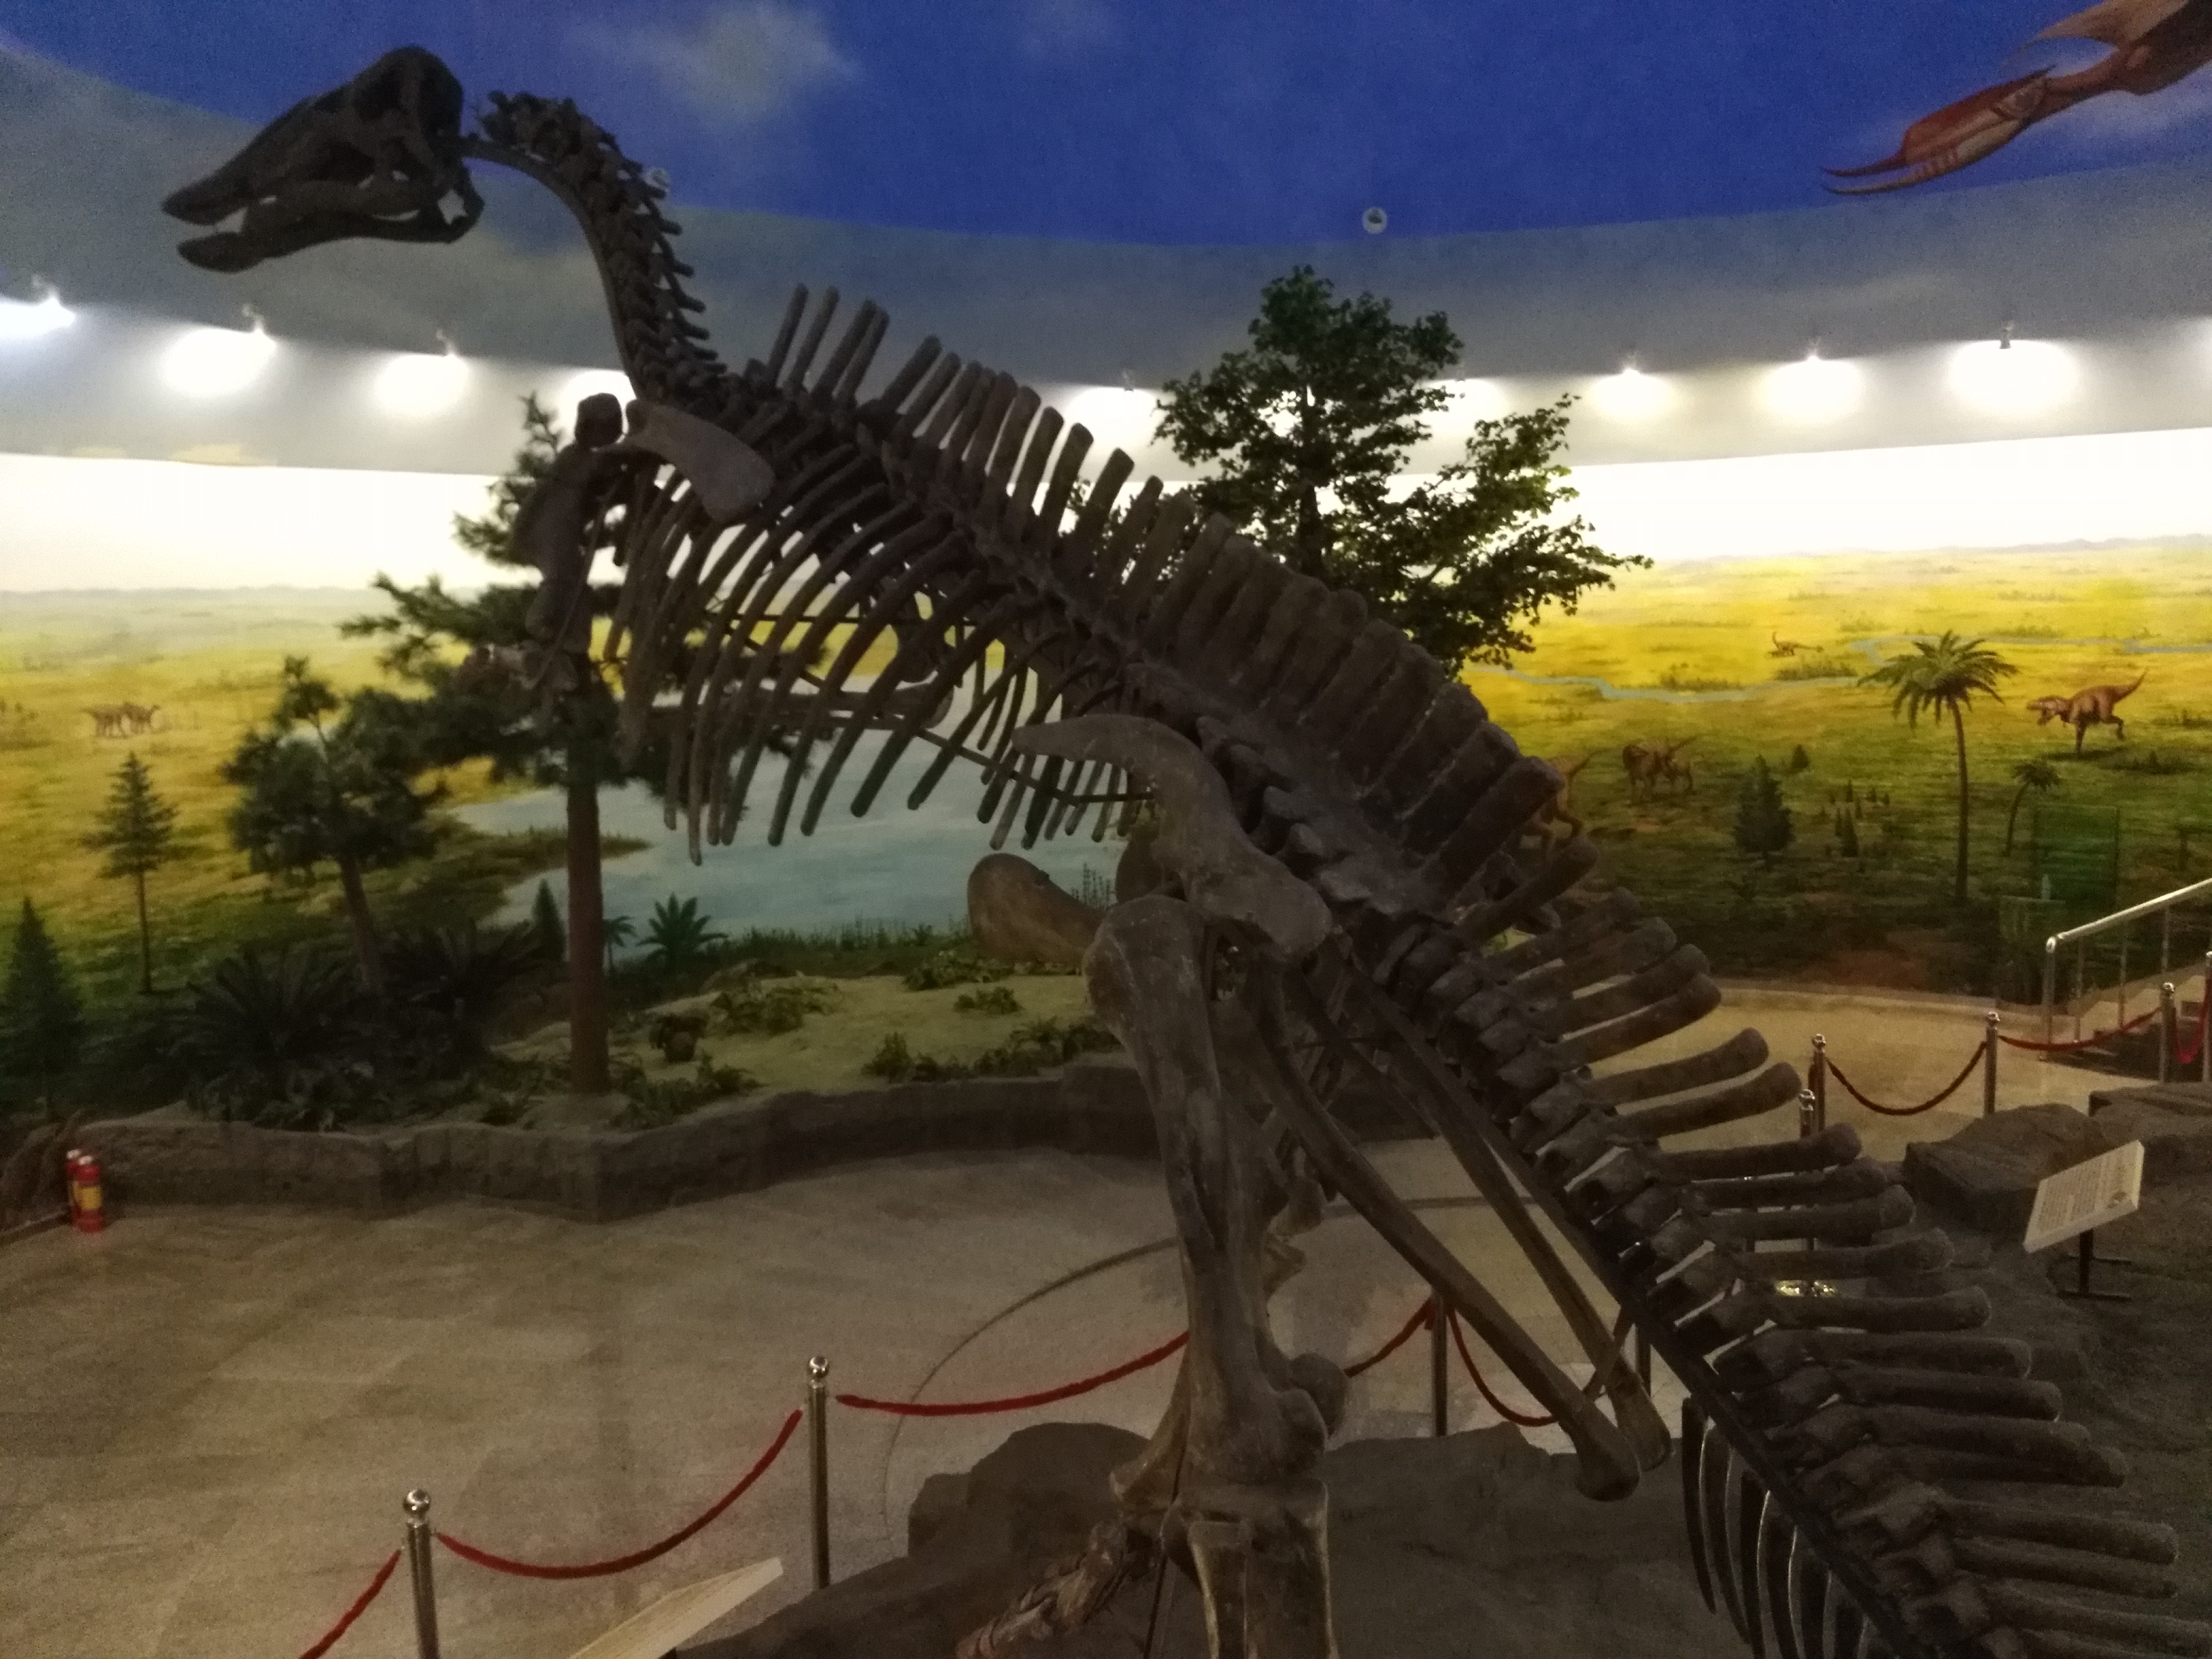 伊春恐龙博物馆图片